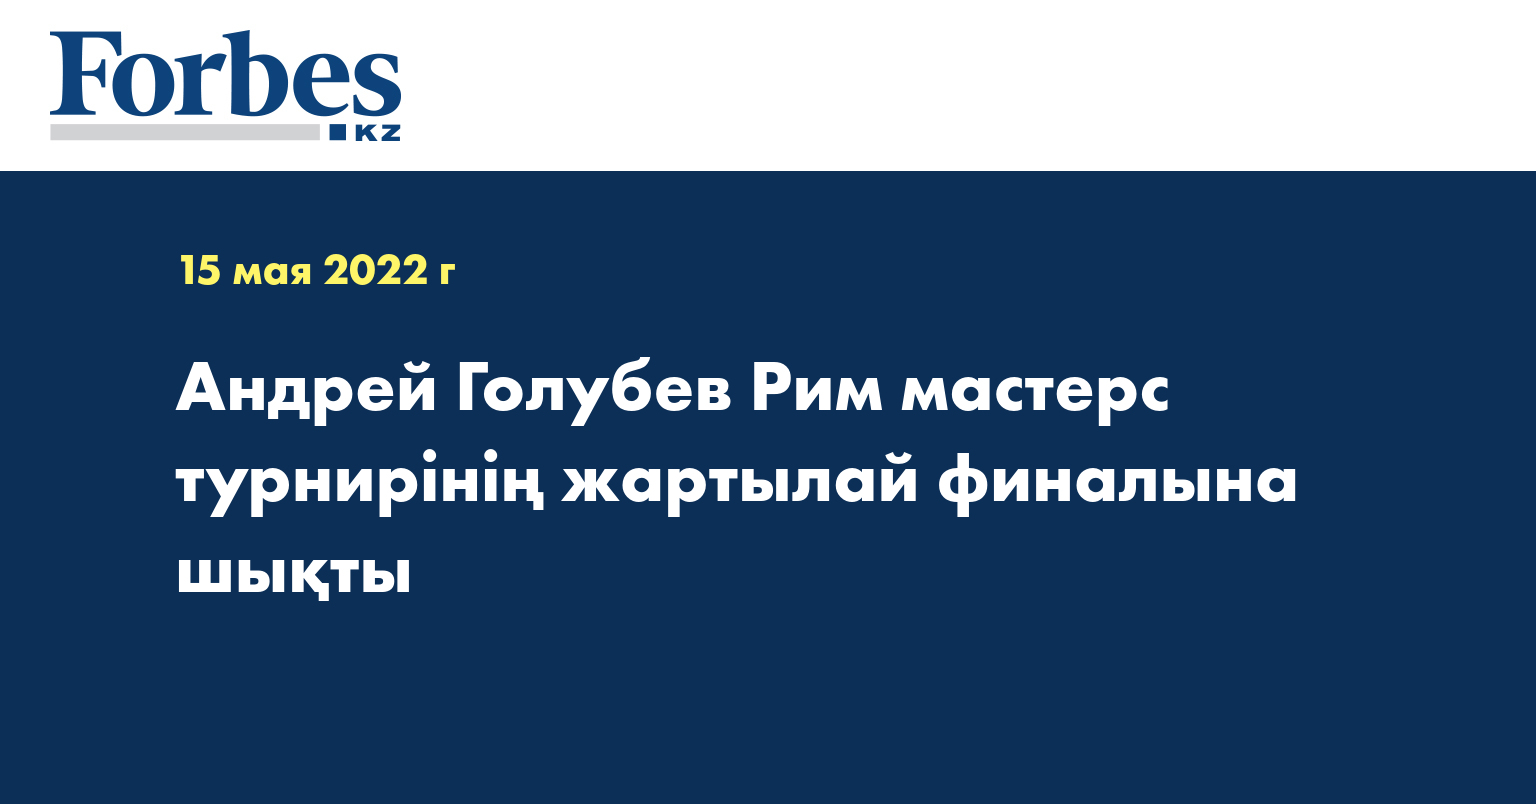 Андрей Голубев Рим мастерс турнирінің жартылай финалына шықты